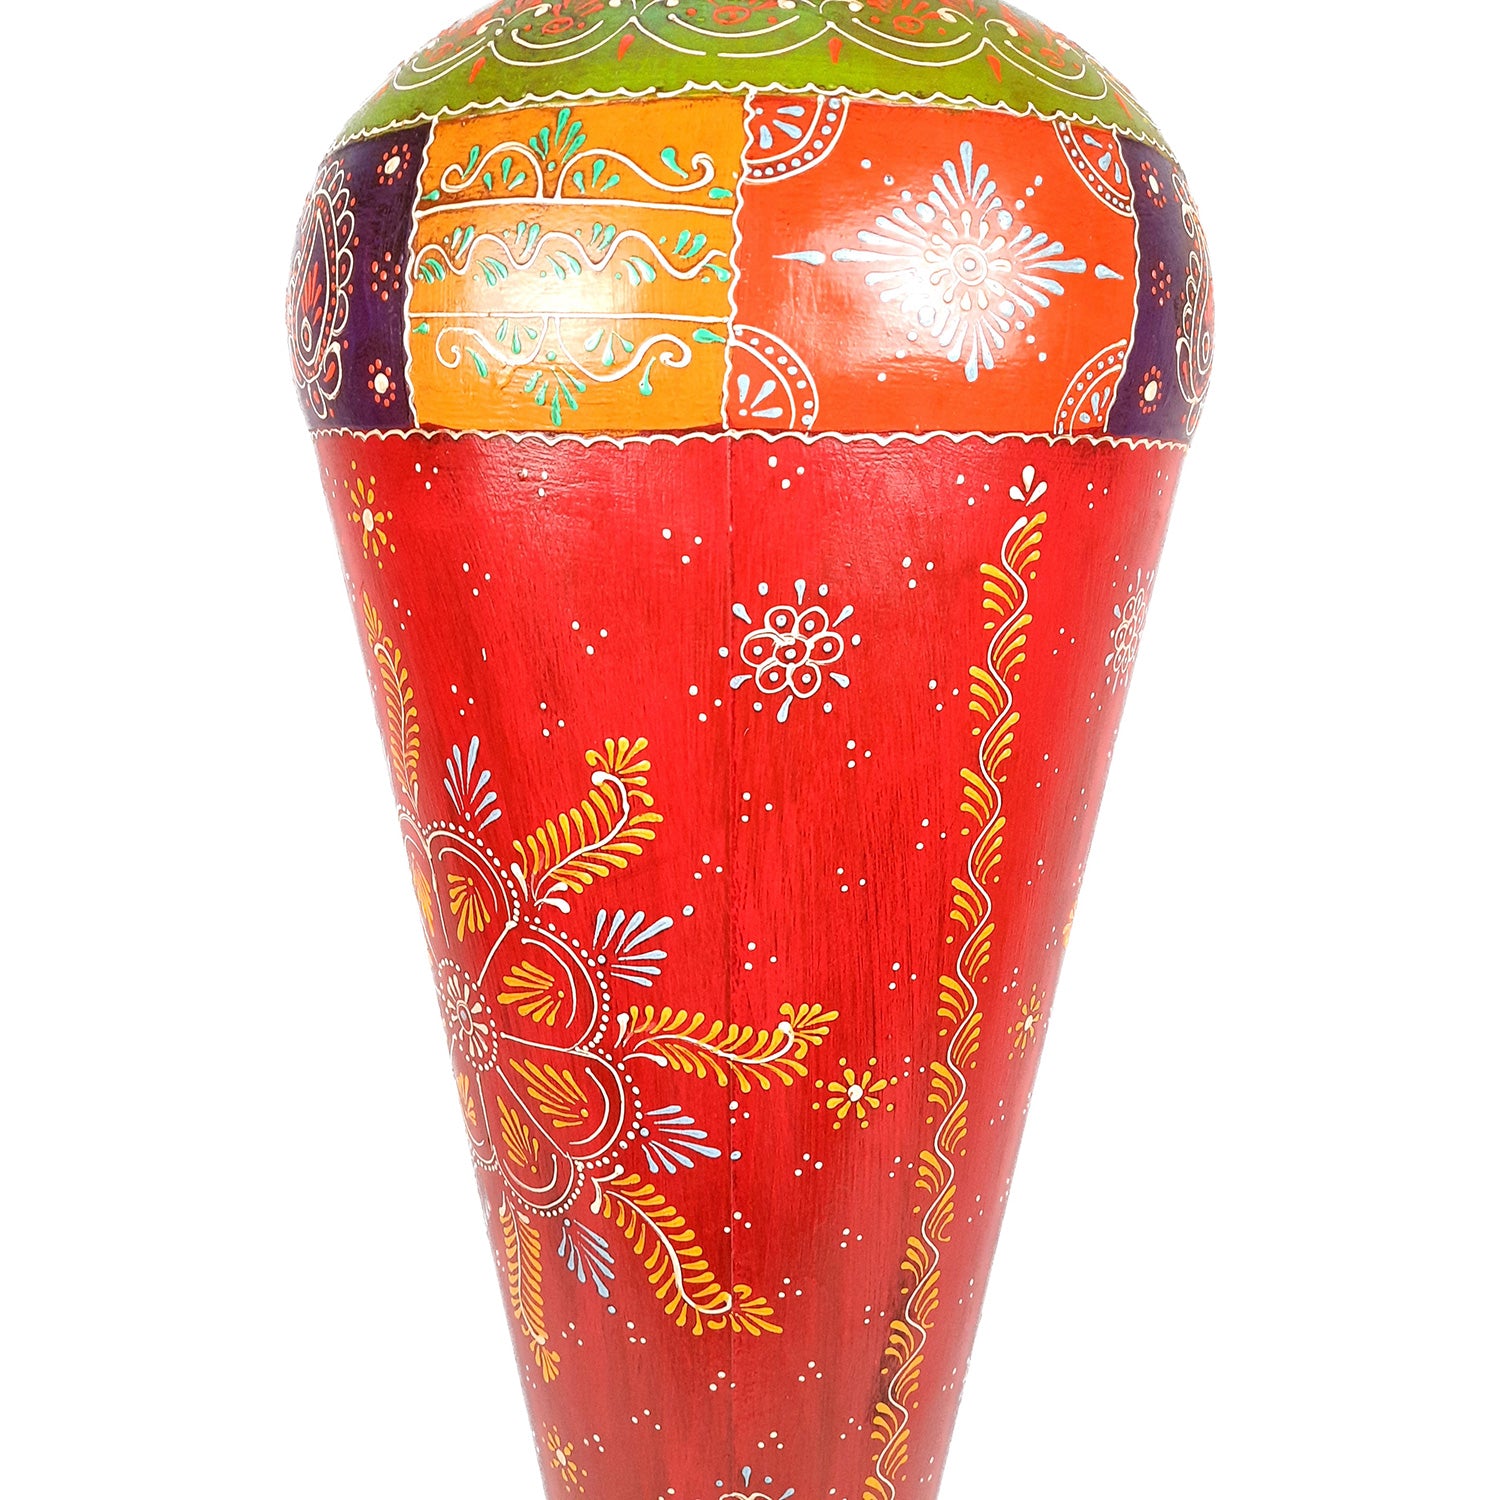 Decorative Vase | Big Flower Pots for Home Decor & Gifts - 37 Inch- Apkamart